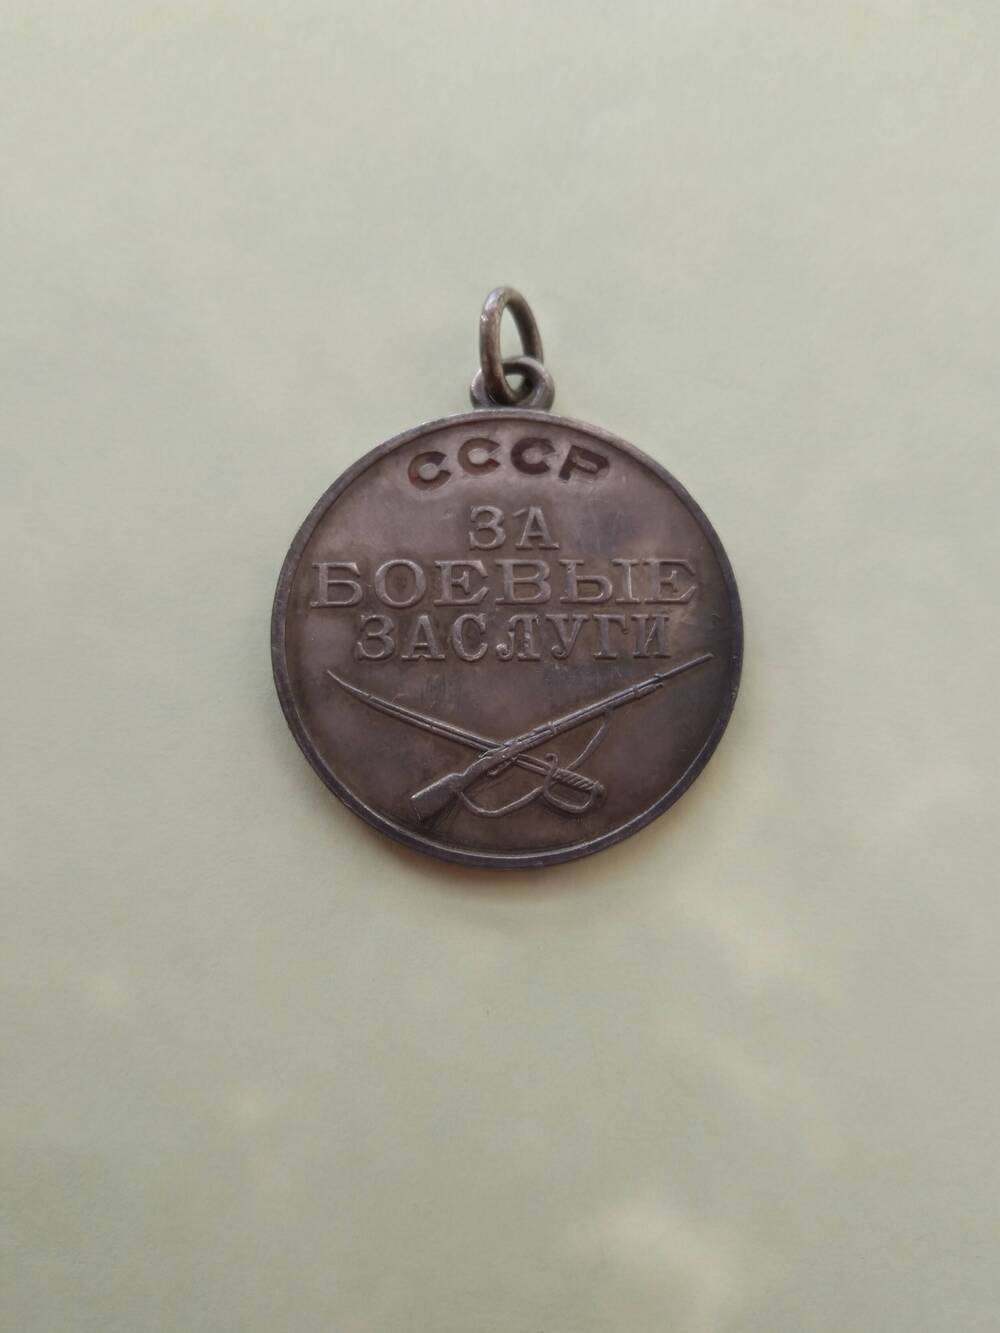 Медаль За боевые заслуги - государственная награда СССР для награждения за умелые, инициативные и смелые действия, сопряженные с риском для жизни, содействующие успеху боевых действий с врагами Советского государства.